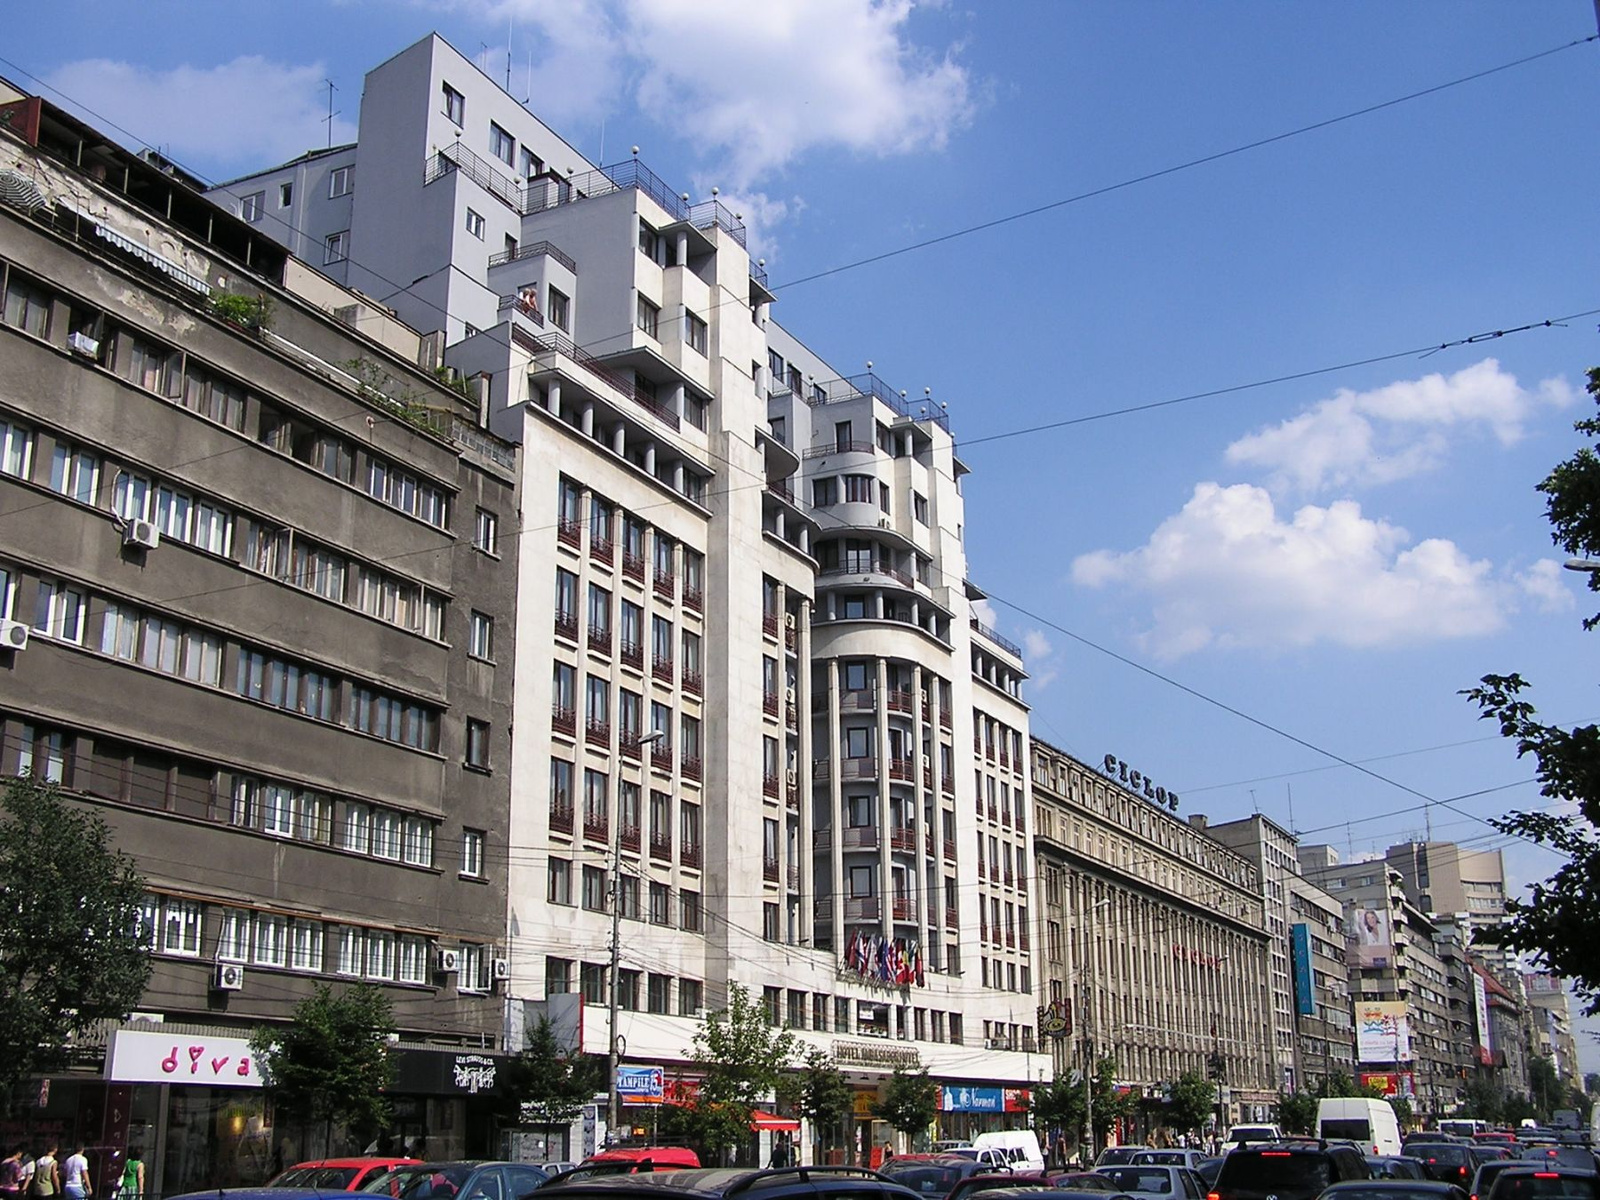 Bukarest Bulevardul Magheru